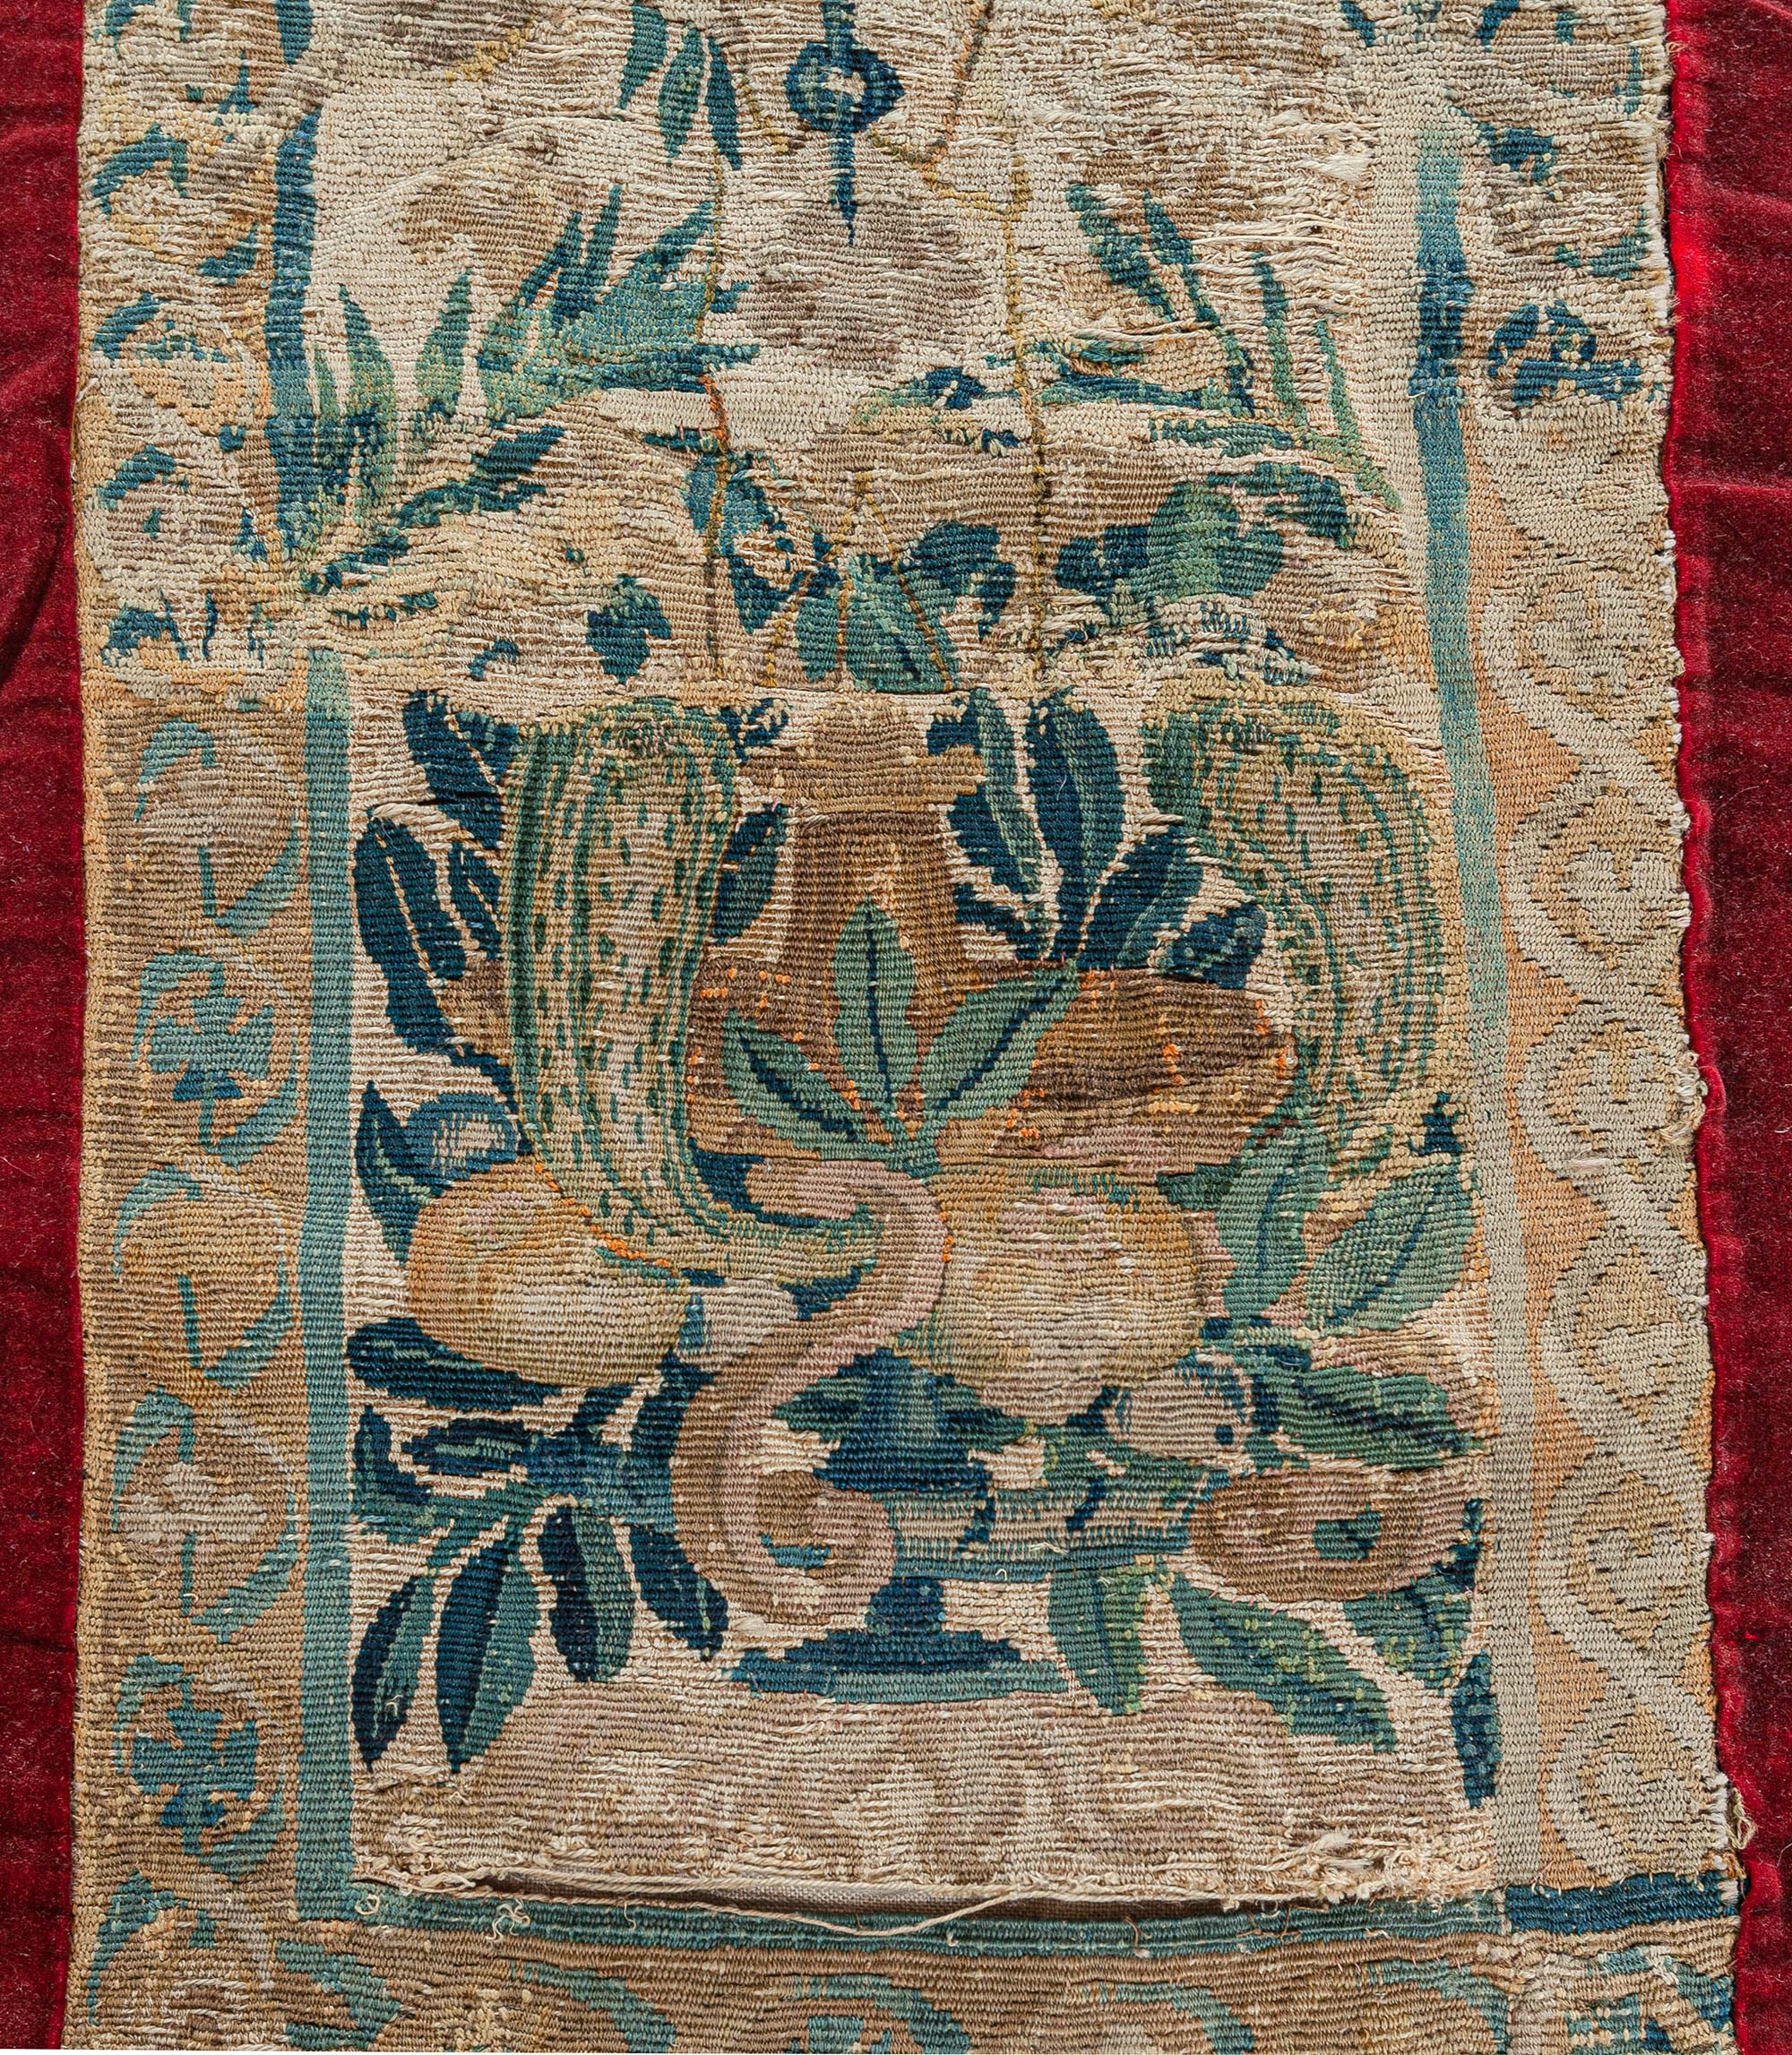 Antique Tapestry Fragment runner
Size: 1'3